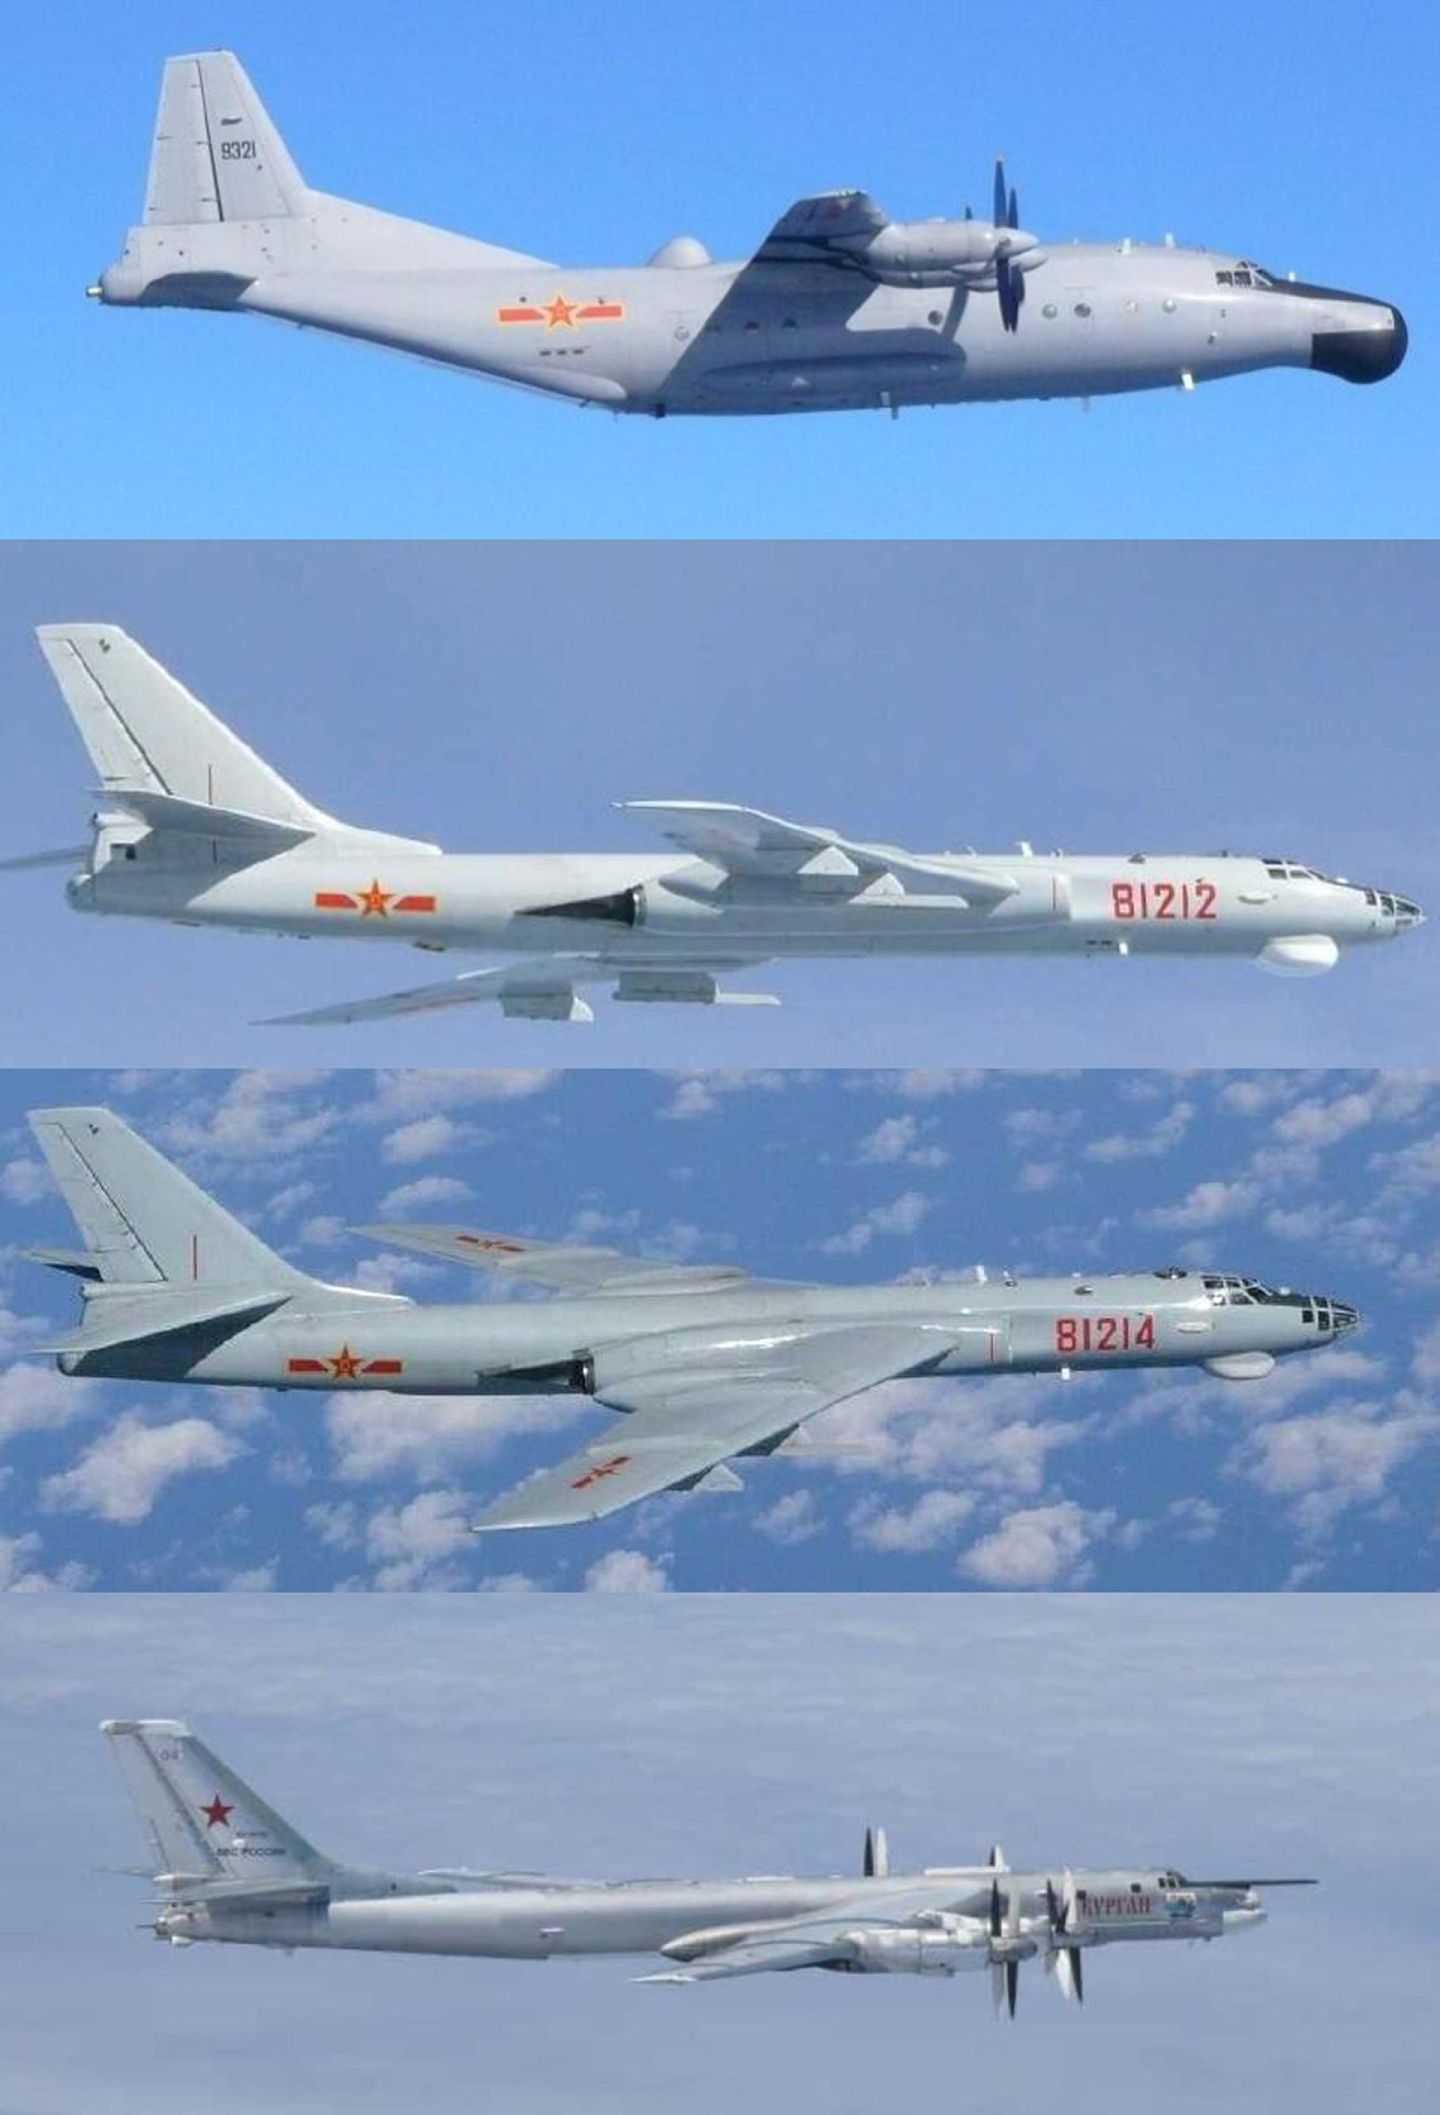 2016年8月19日，中国轰-6轰炸机和运-8警戒机以及俄罗斯图-95轰炸机同一天出现在在日本周边海域，引起日本自卫队的高度关注。图从上至下依次为运-8警戒机、2架轰-6轰炸机，以及俄罗斯图-95轰炸机。（日本防卫省官网）